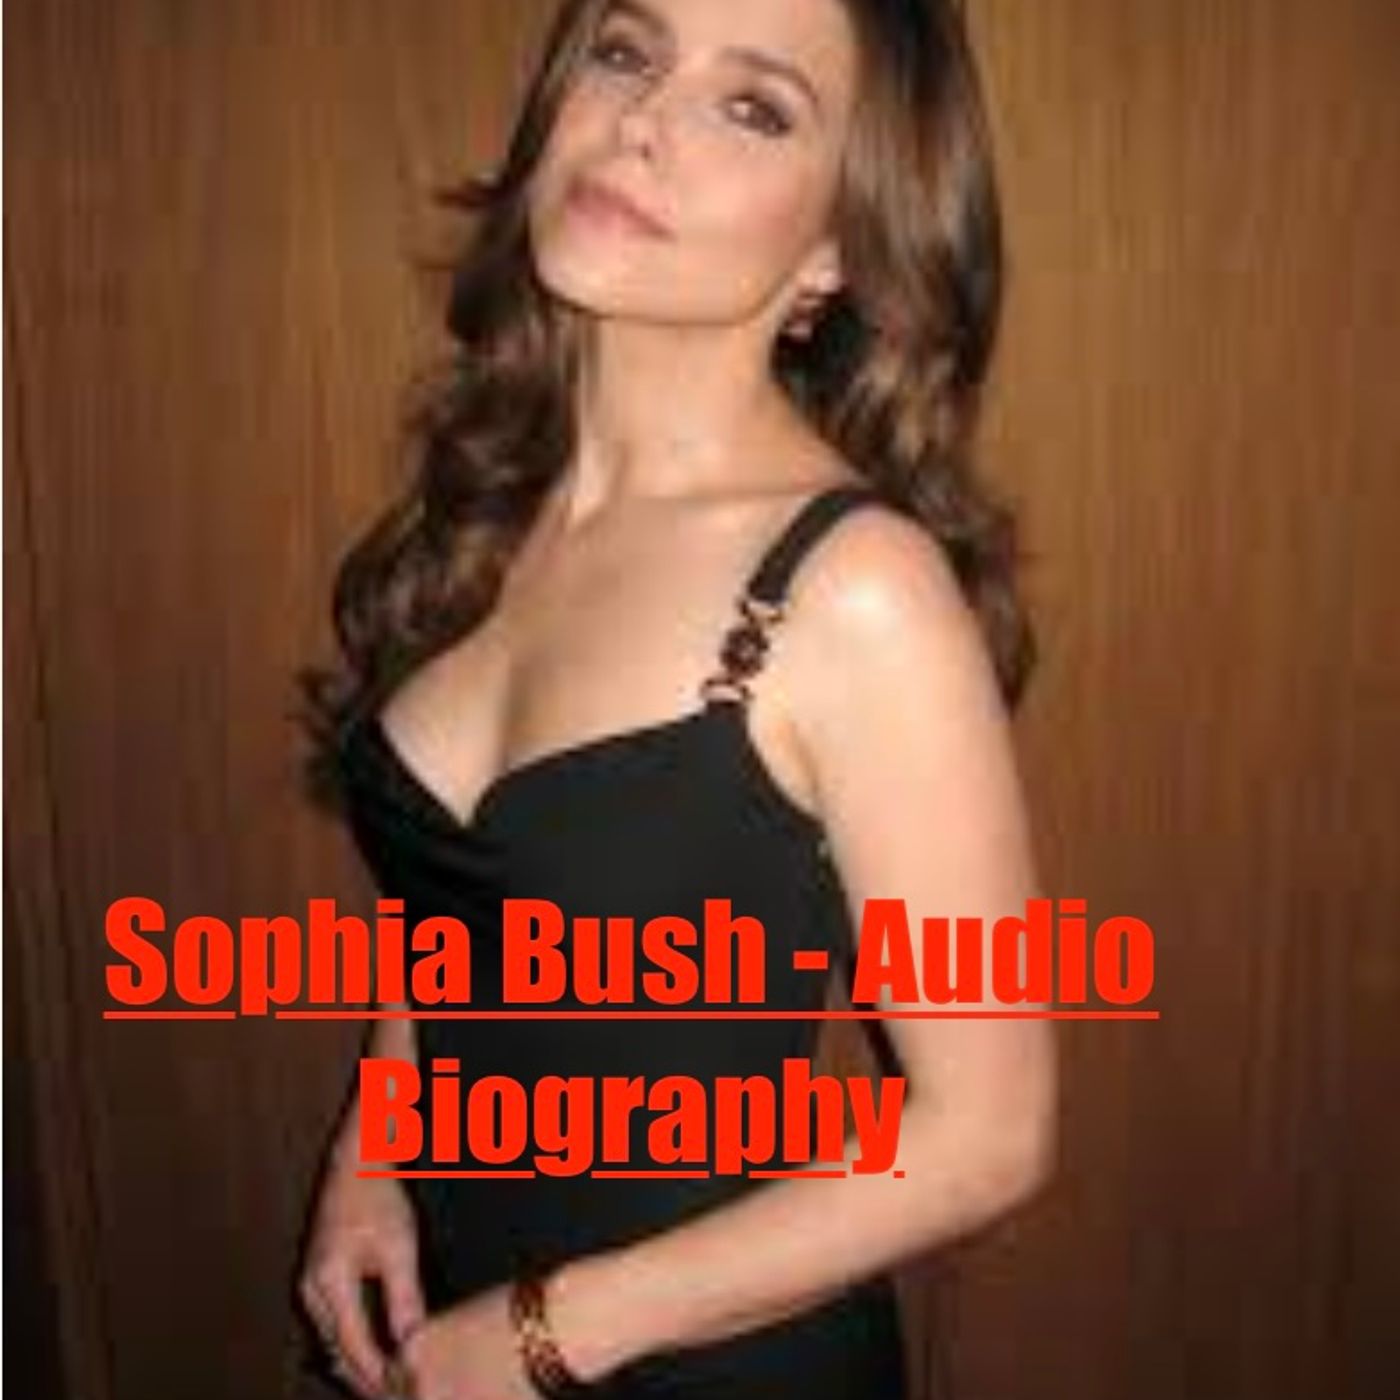 Sophia Bush - Audio Biography